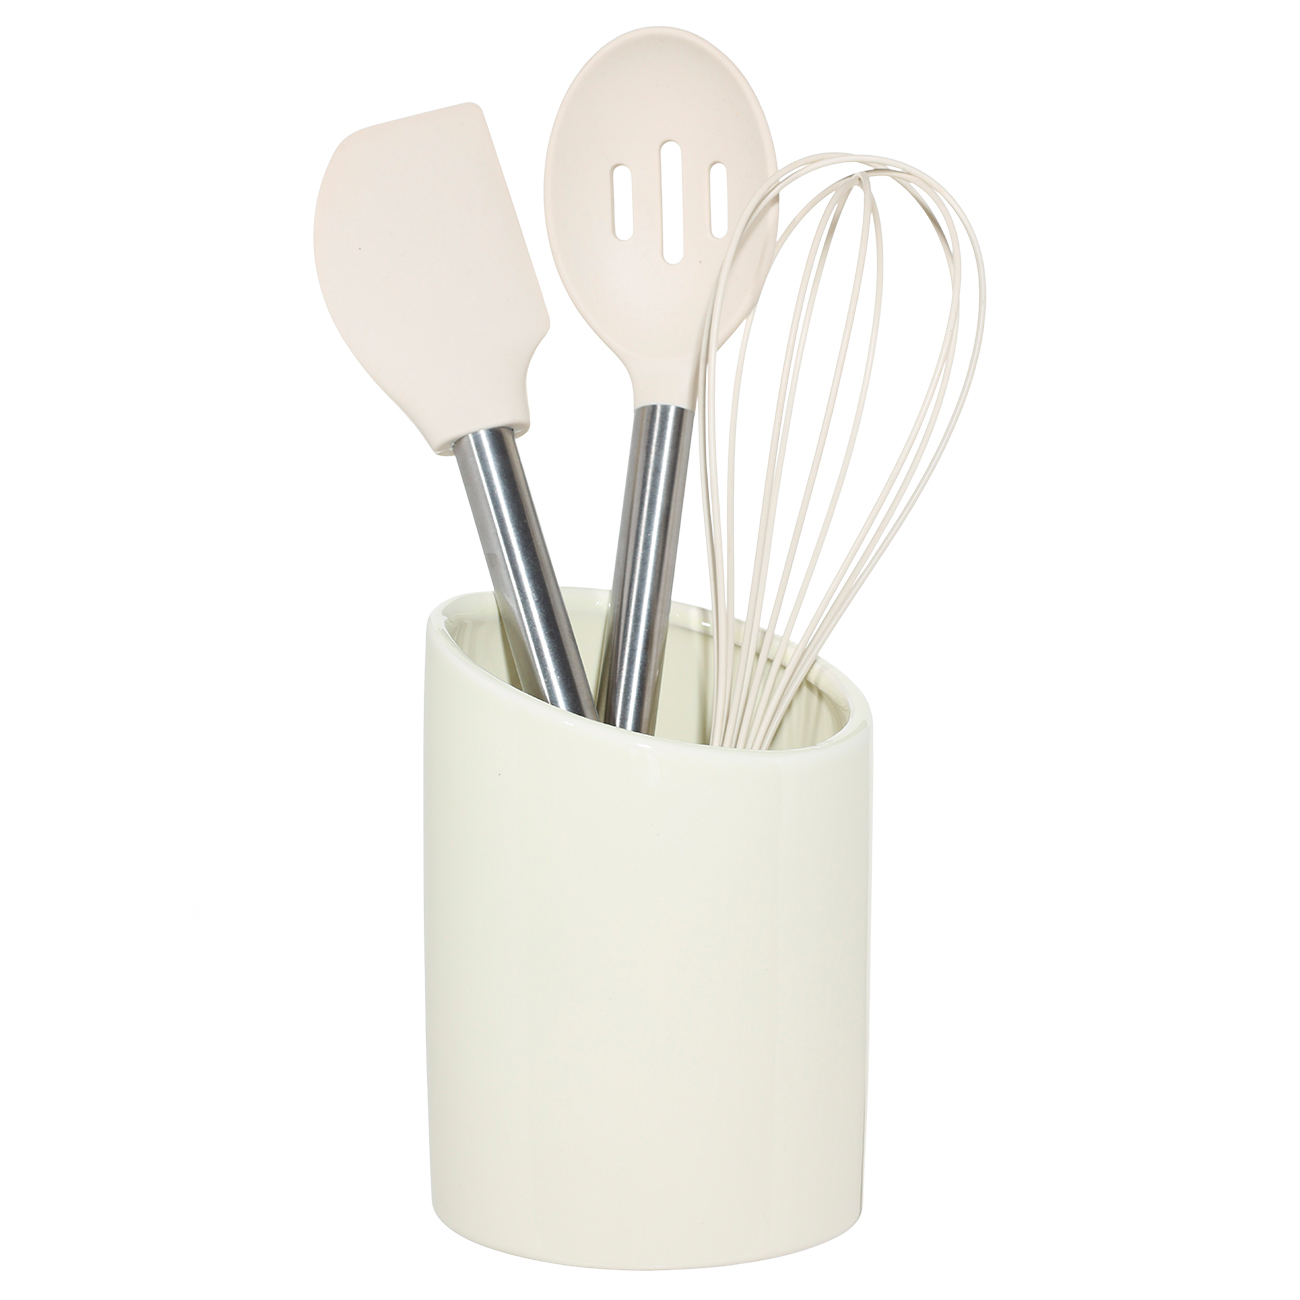 Stand for kitchen accessories, 17 cm, ceramic, milk, Cut, Light kitchen изображение № 2